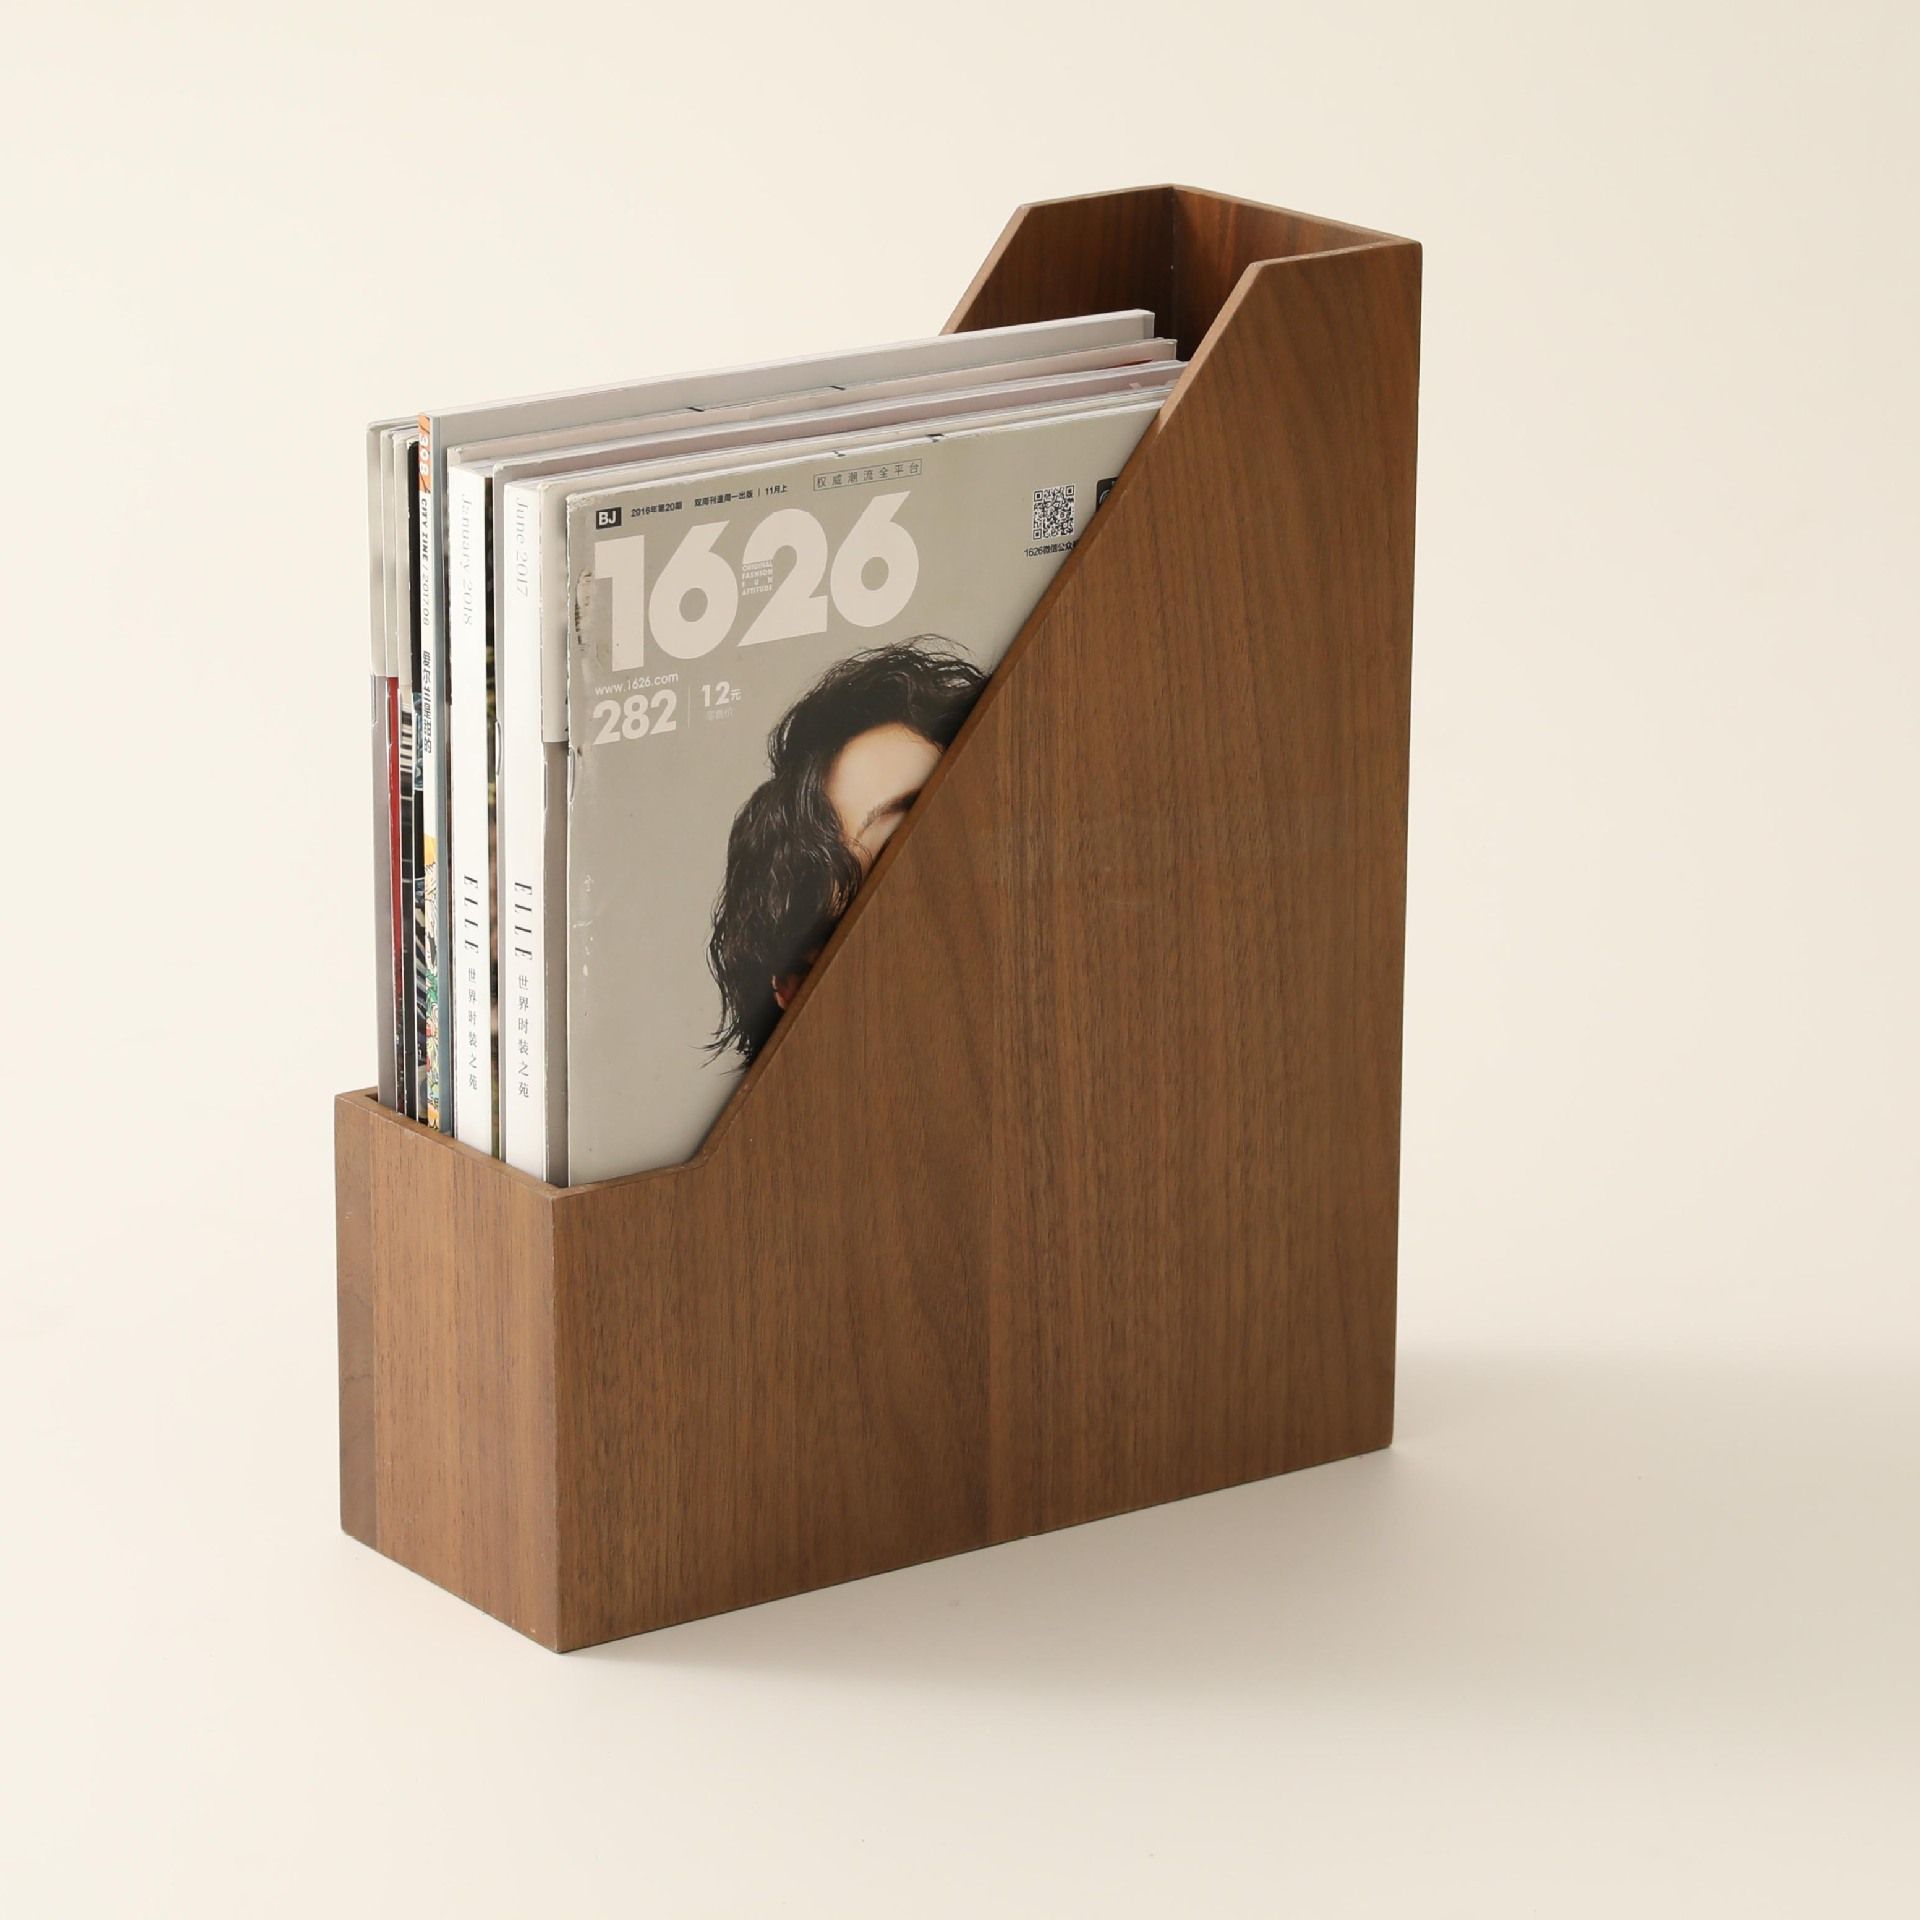 Fogun Walnut Wood Desktop Organizer Desktop Office Home Bookends Book Ends Stand Holder Shelf